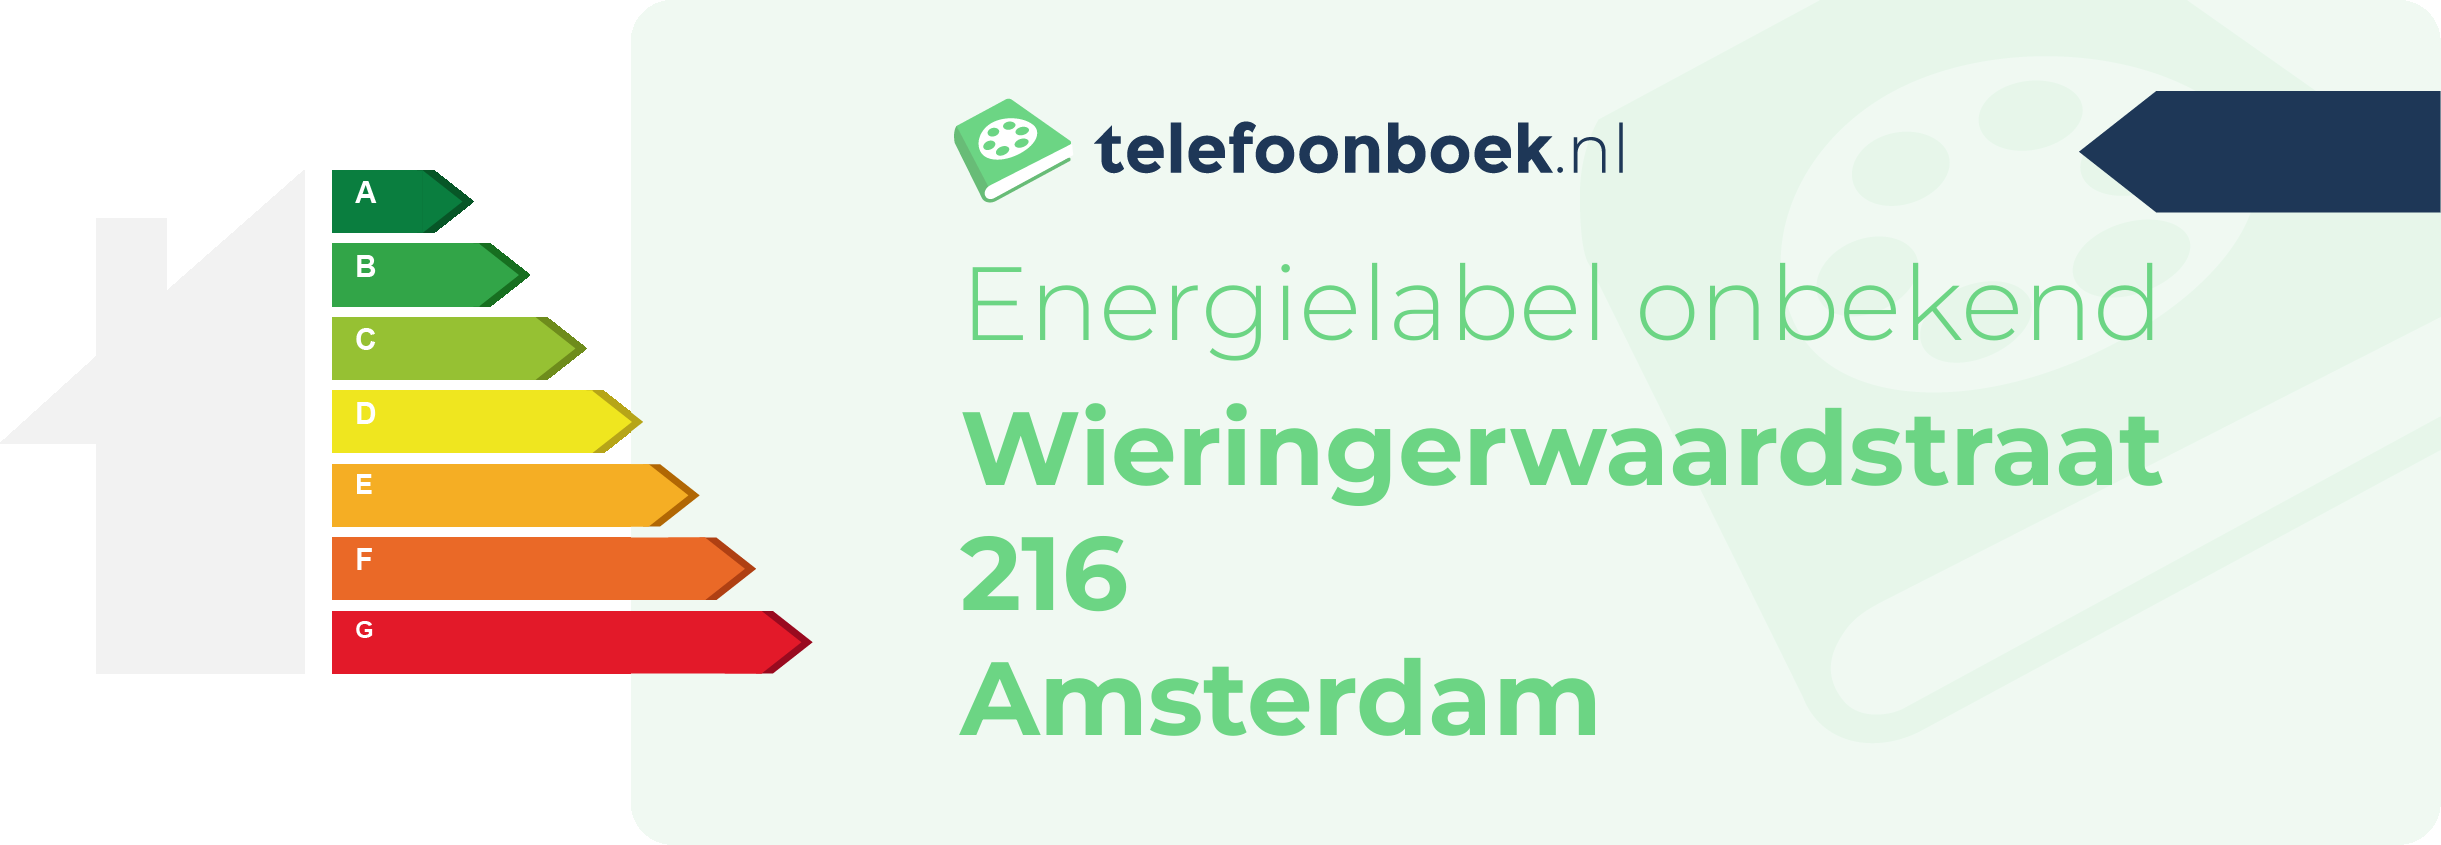 Energielabel Wieringerwaardstraat 216 Amsterdam